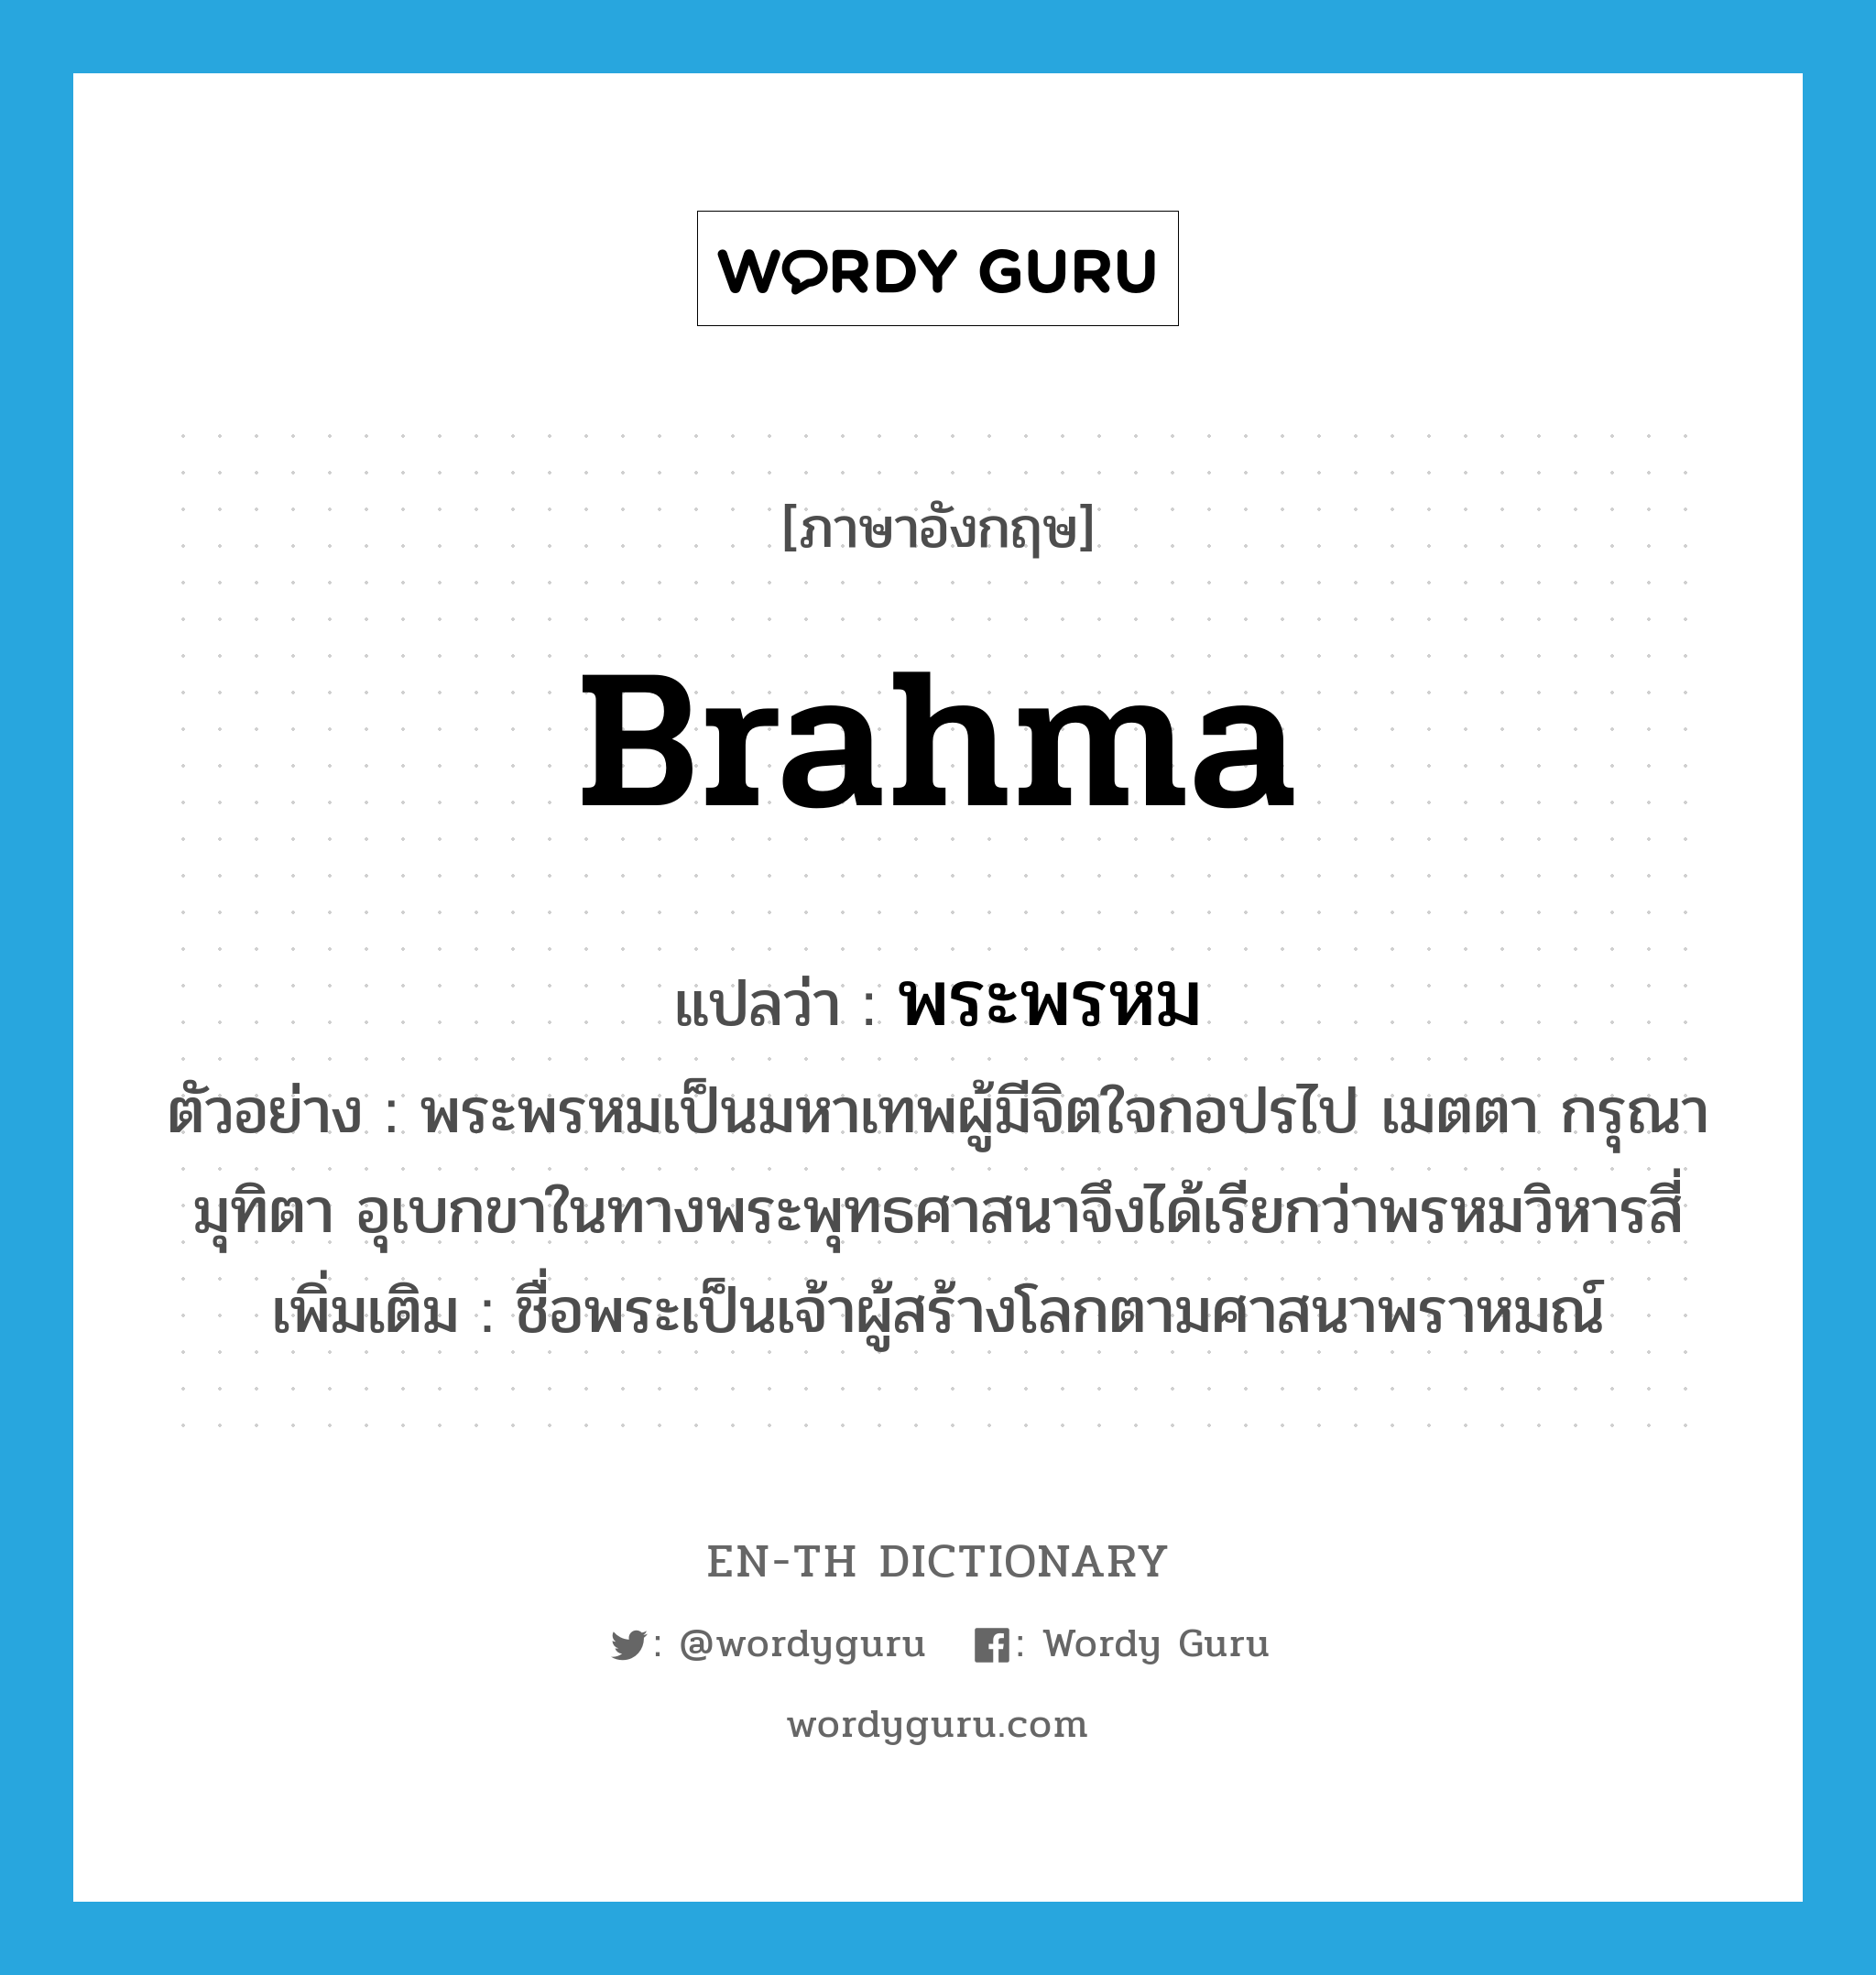 Brahma แปลว่า?, คำศัพท์ภาษาอังกฤษ Brahma แปลว่า พระพรหม ประเภท N ตัวอย่าง พระพรหมเป็นมหาเทพผู้มีจิตใจกอปรไป เมตตา กรุณา มุทิตา อุเบกขาในทางพระพุทธศาสนาจึงได้เรียกว่าพรหมวิหารสี่ เพิ่มเติม ชื่อพระเป็นเจ้าผู้สร้างโลกตามศาสนาพราหมณ์ หมวด N